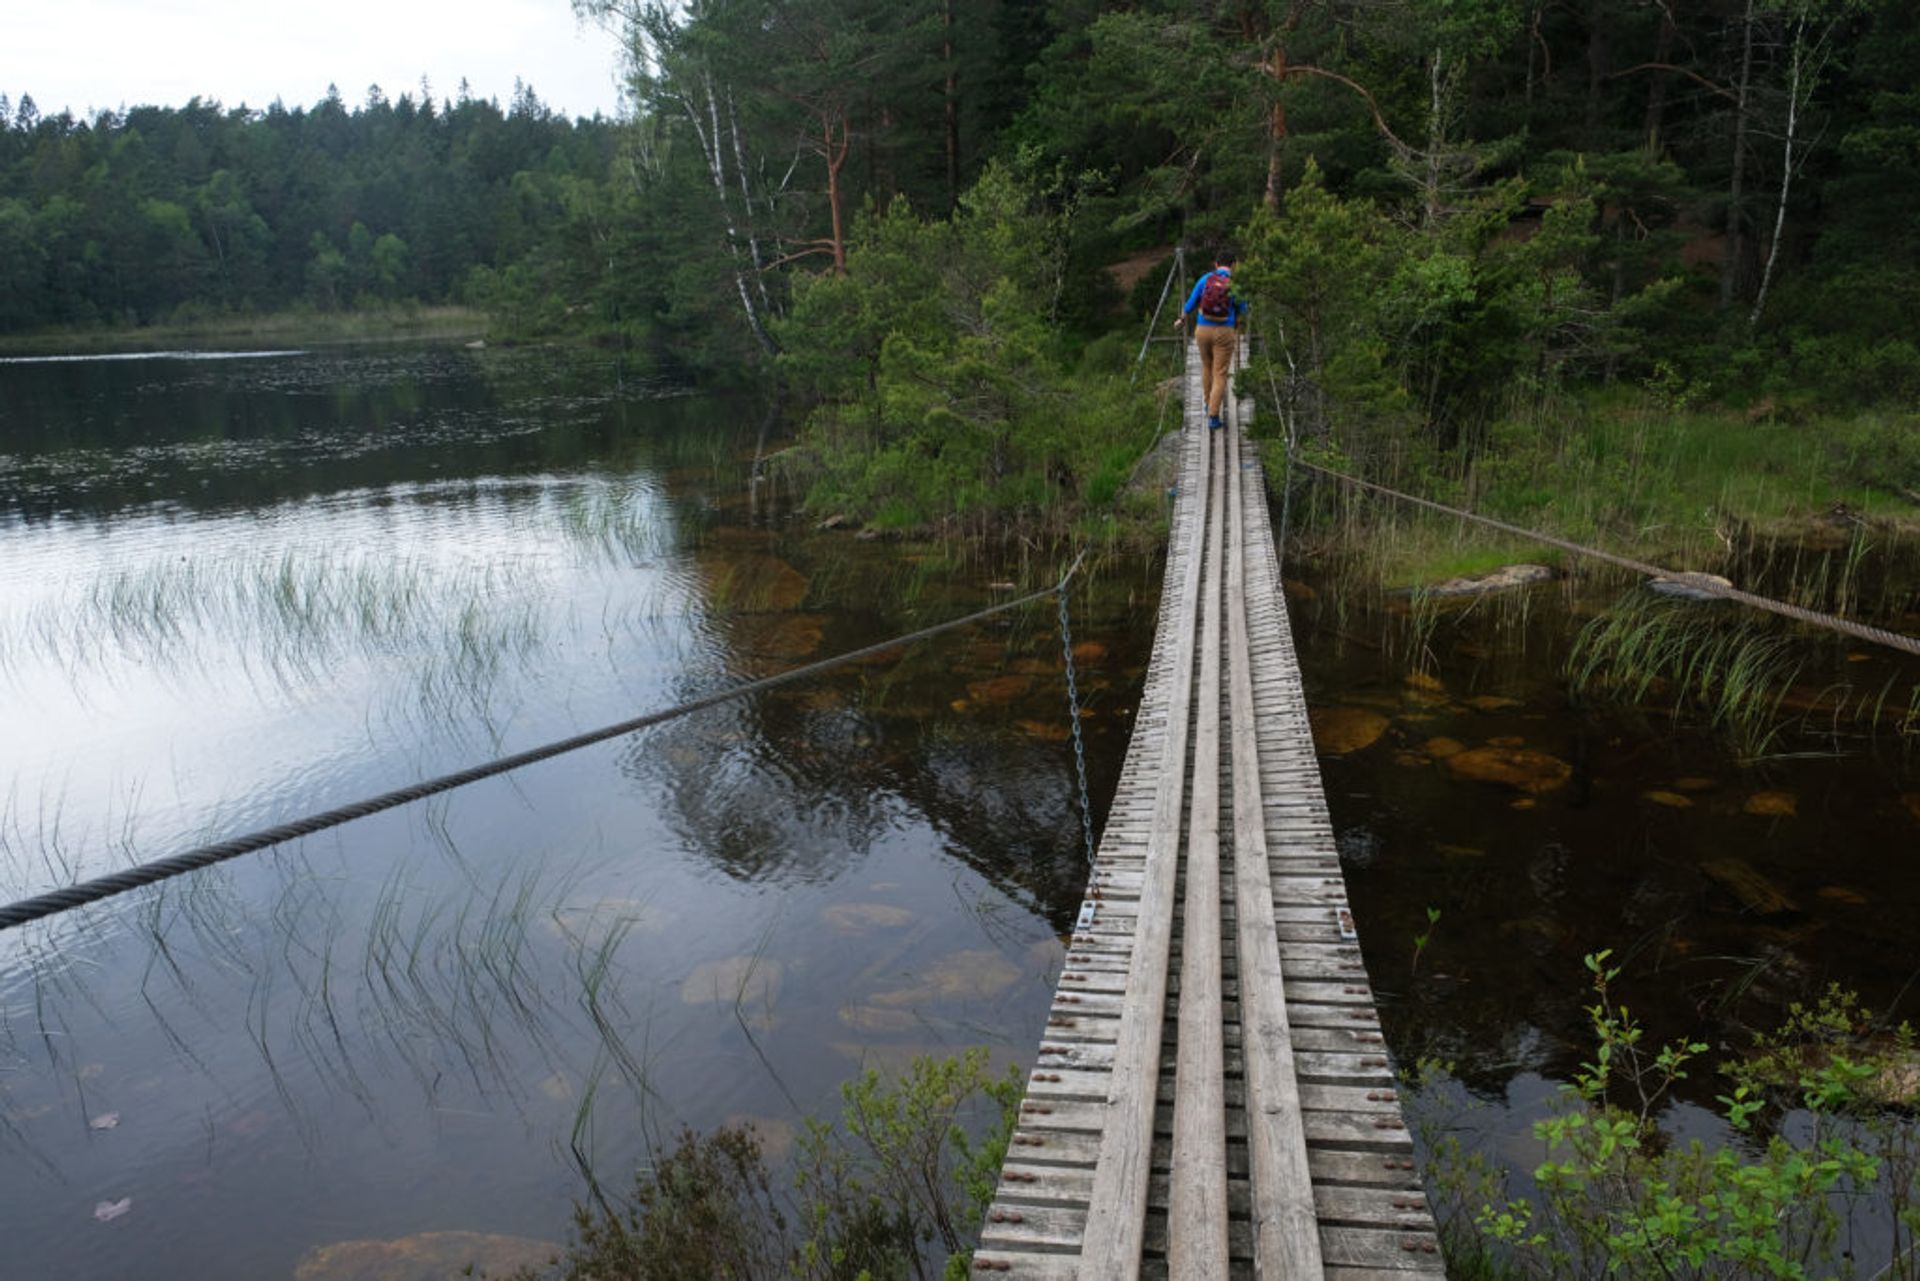 Students crossing a footbridge over a river.